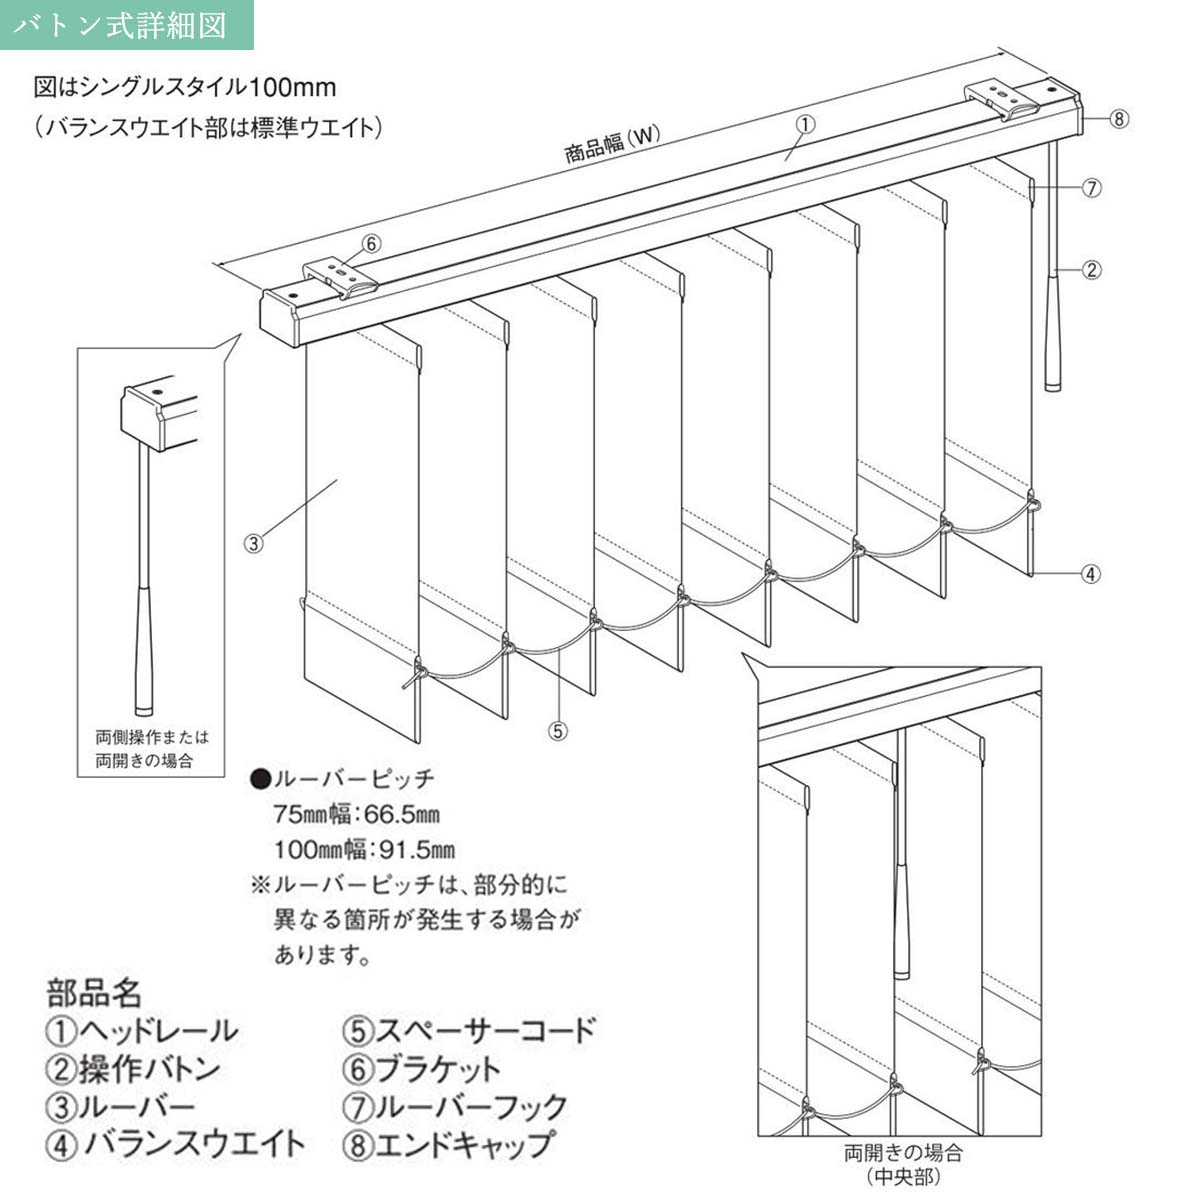 日本製バーチカルブラインドアルペジオ 『リーチェ遮熱 ルーバー75mm